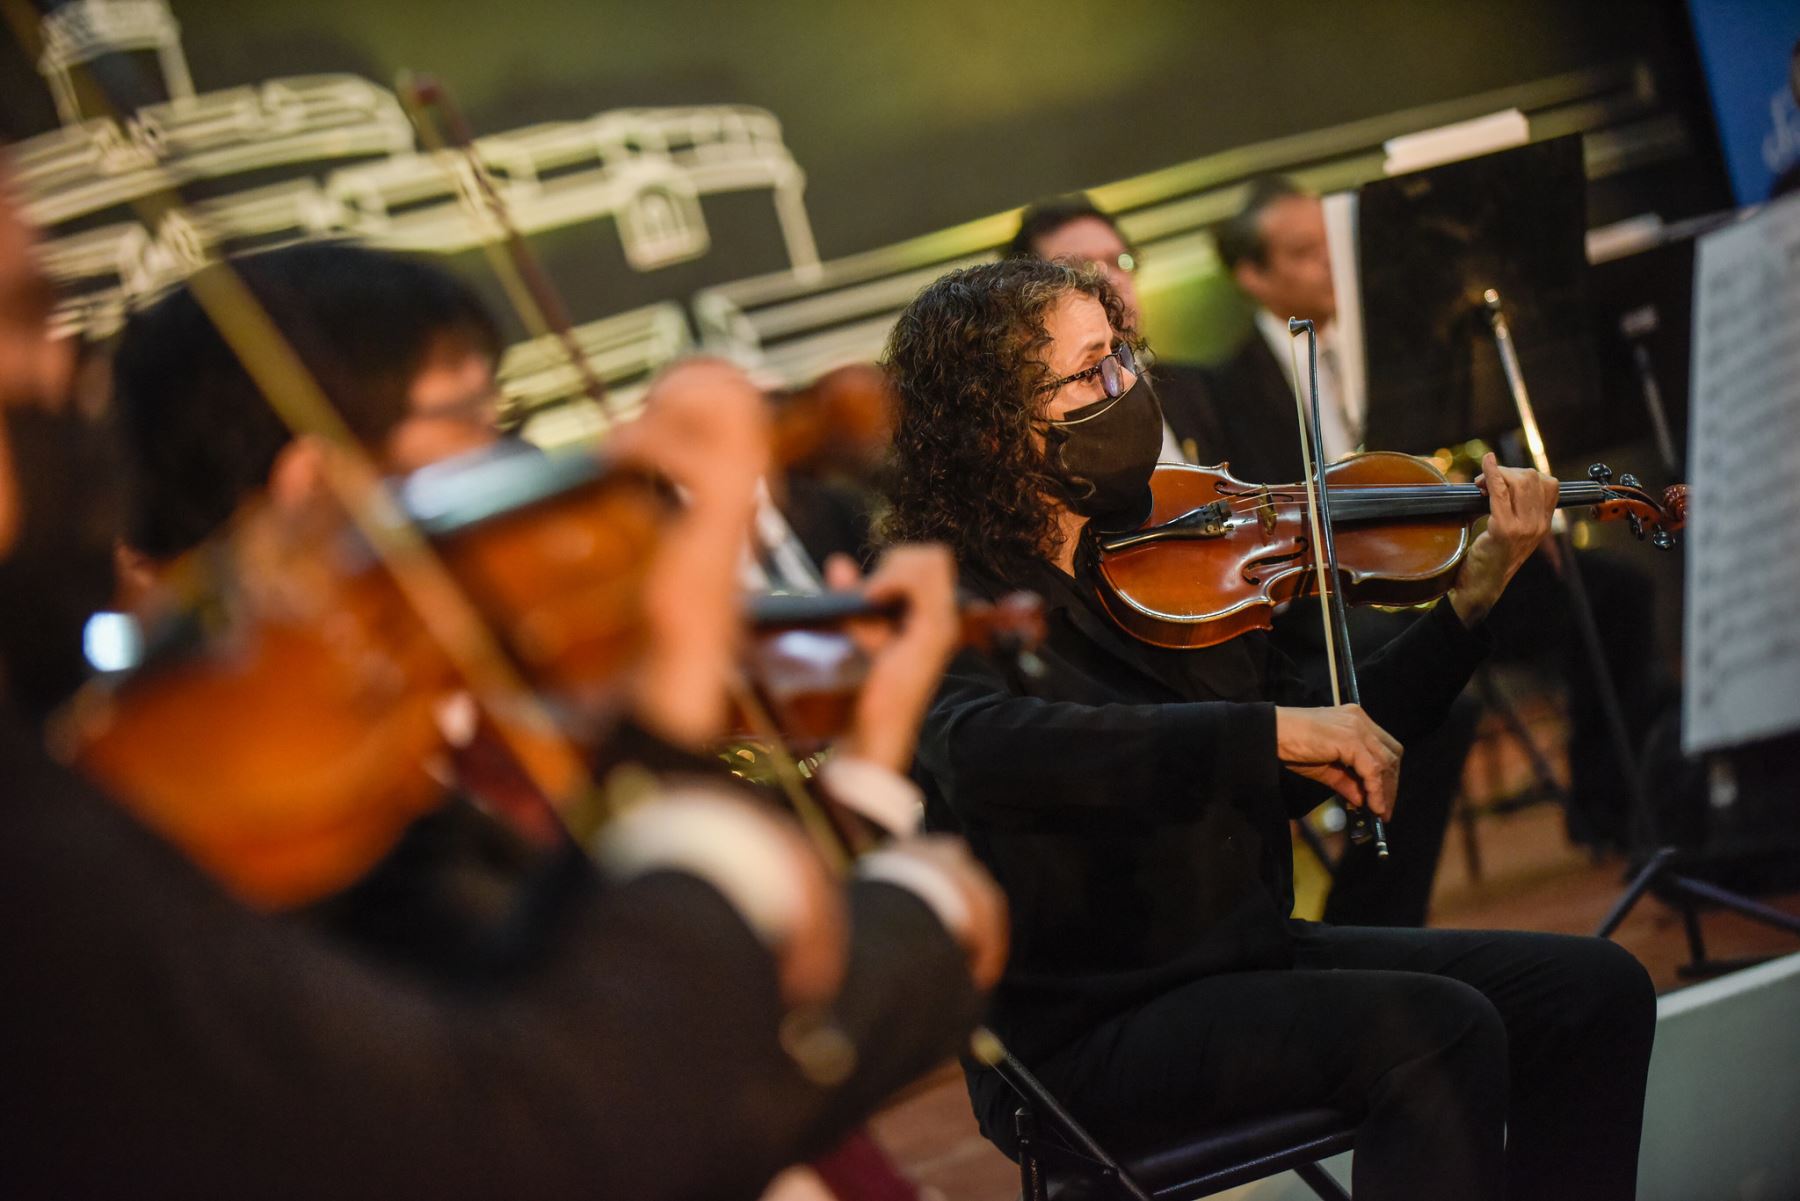 Orquesta Sinfónica Nacional interpretó clásicos mundiales y piezas peruanas como “La flor de la canela” y “El cóndor pasa”. Evento se realizó en la víspera del aniversario del Callao.
Foto: Bicentenario Perú 2021